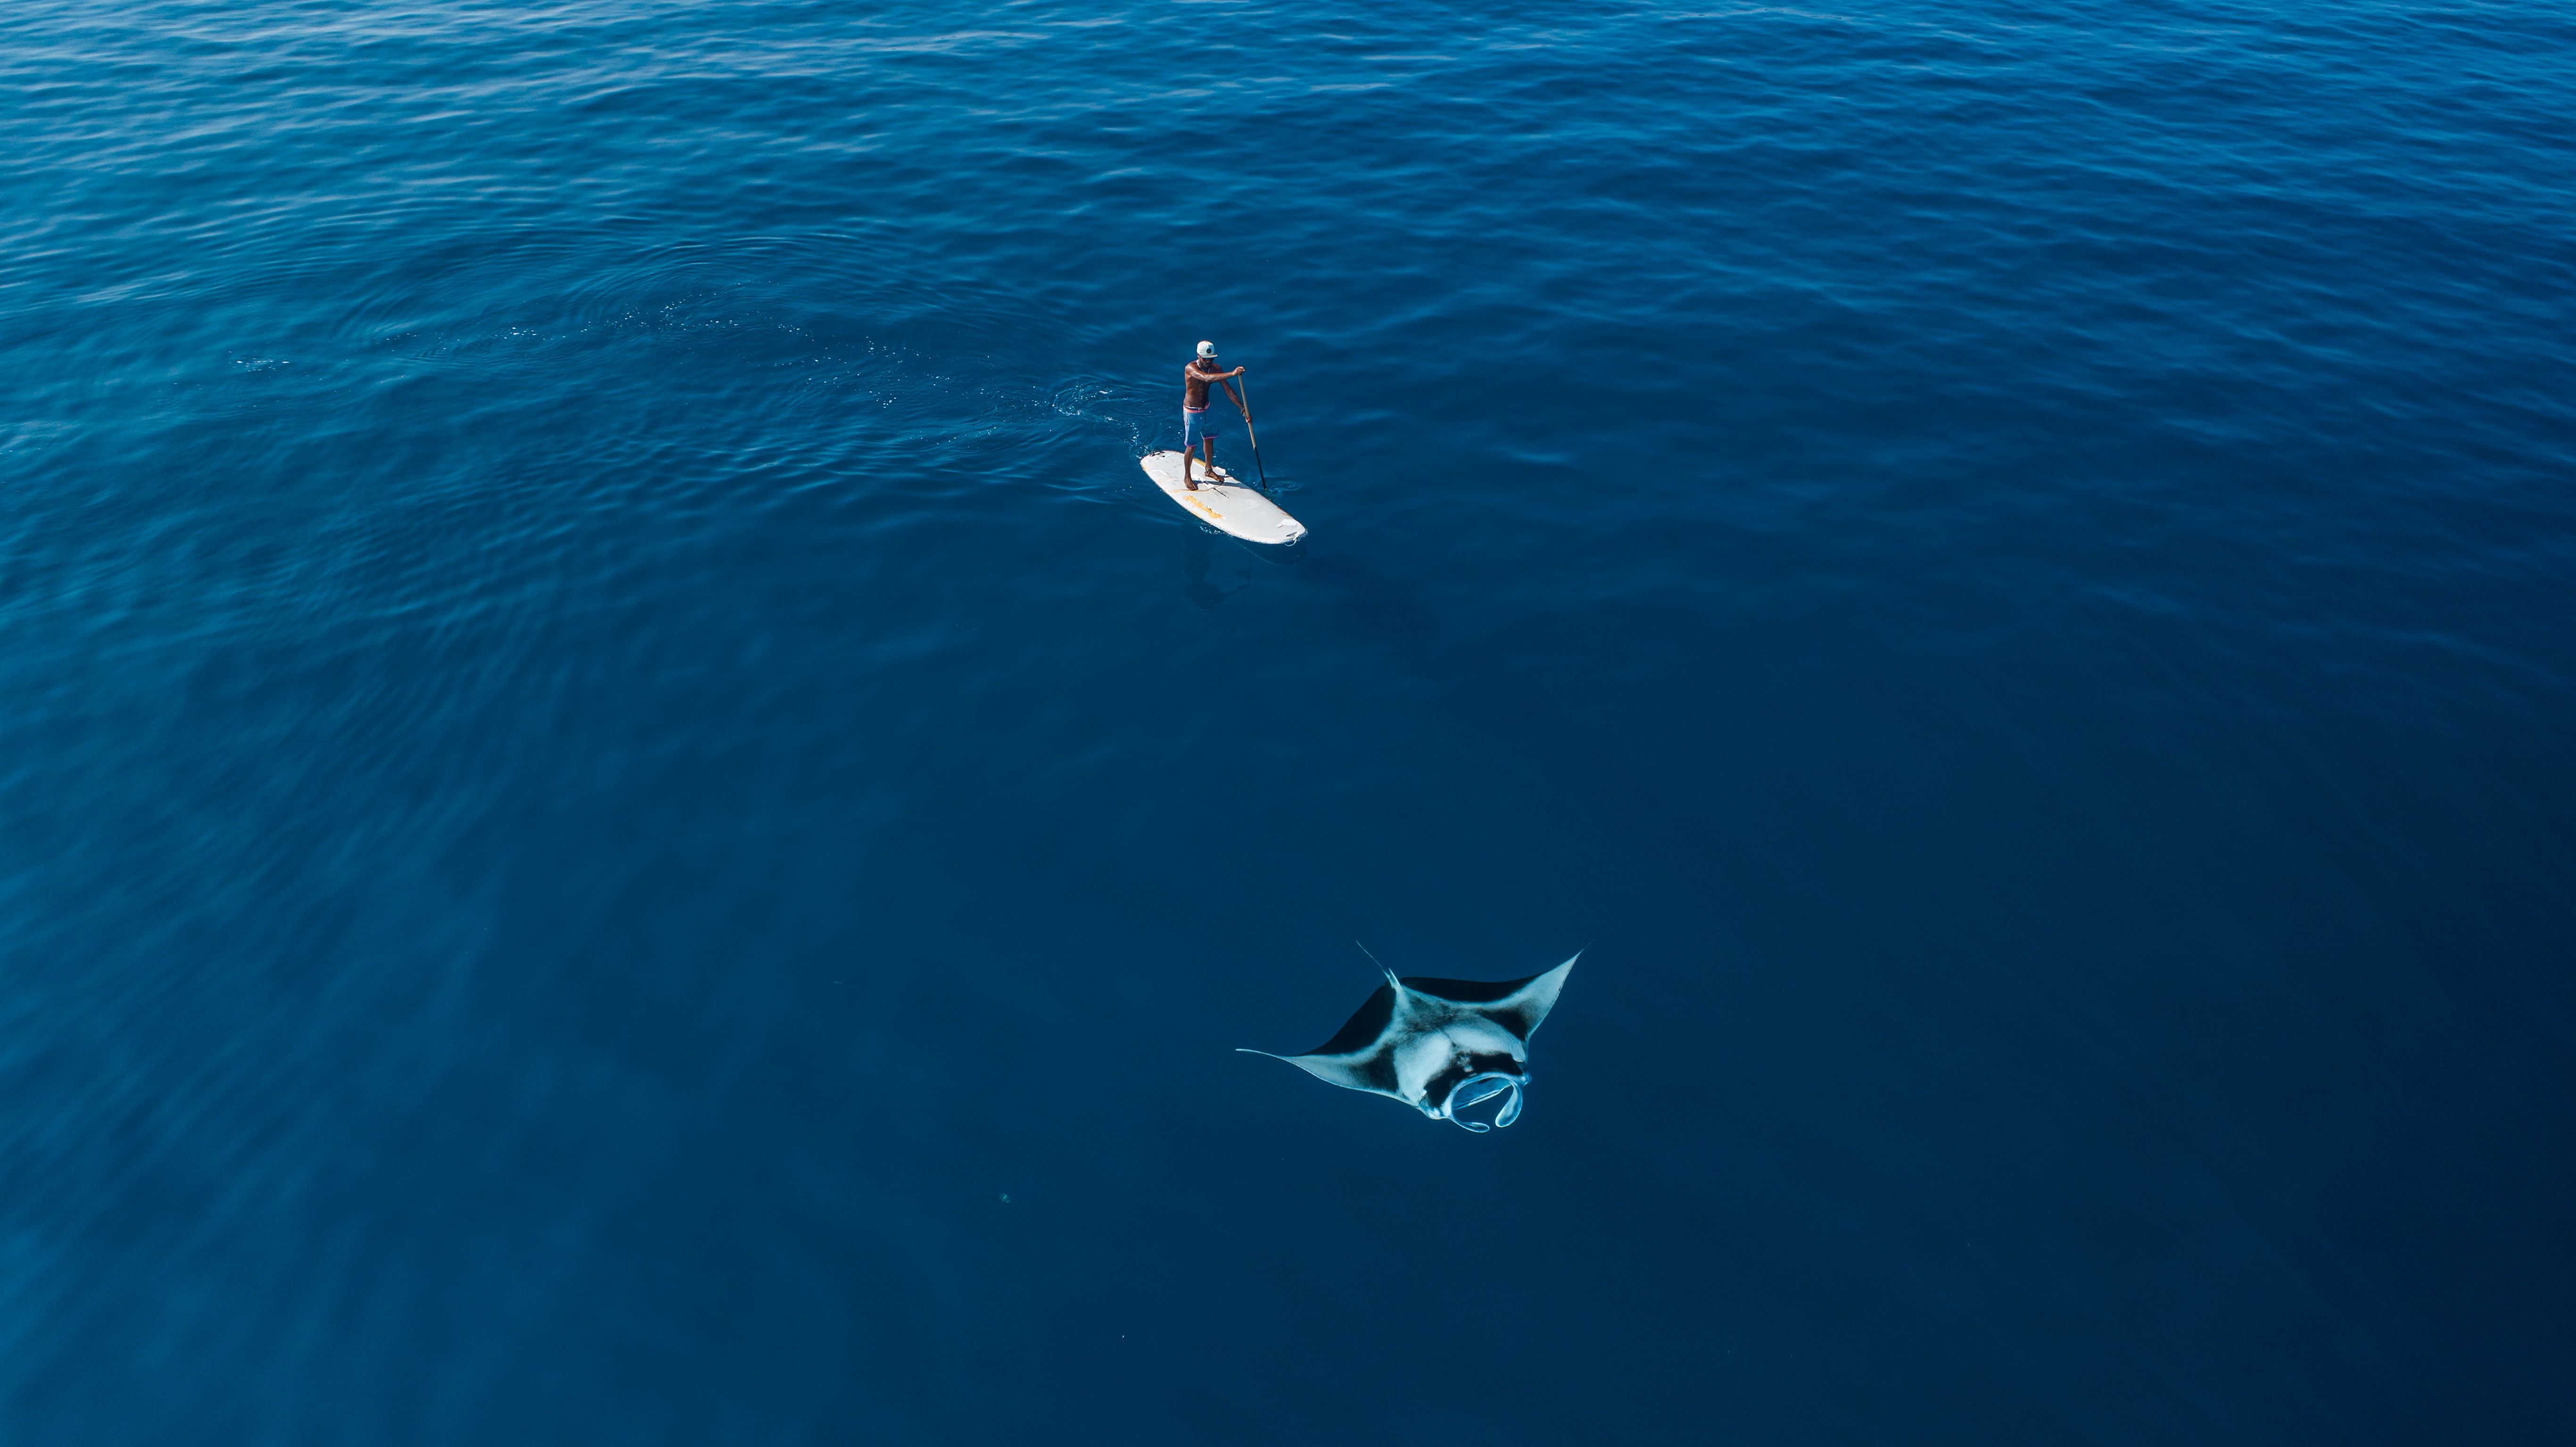 Paddle Boarding near a manta ray